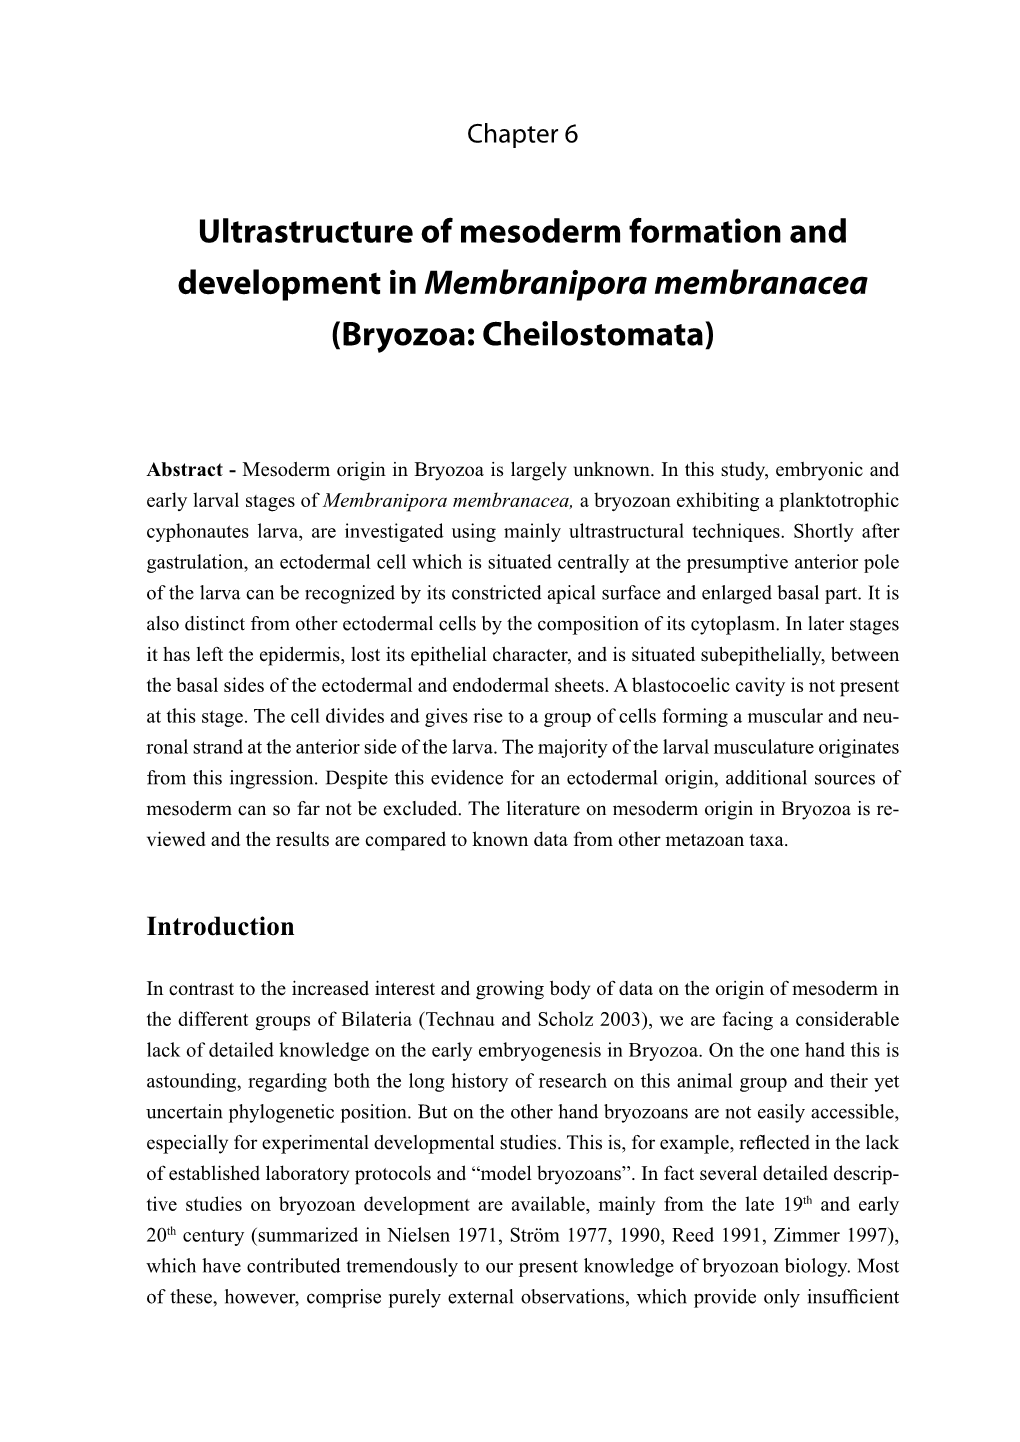 Ultrastructure of Mesoderm Formation and Development in Membranipora Membranacea (Bryozoa: Cheilostomata)